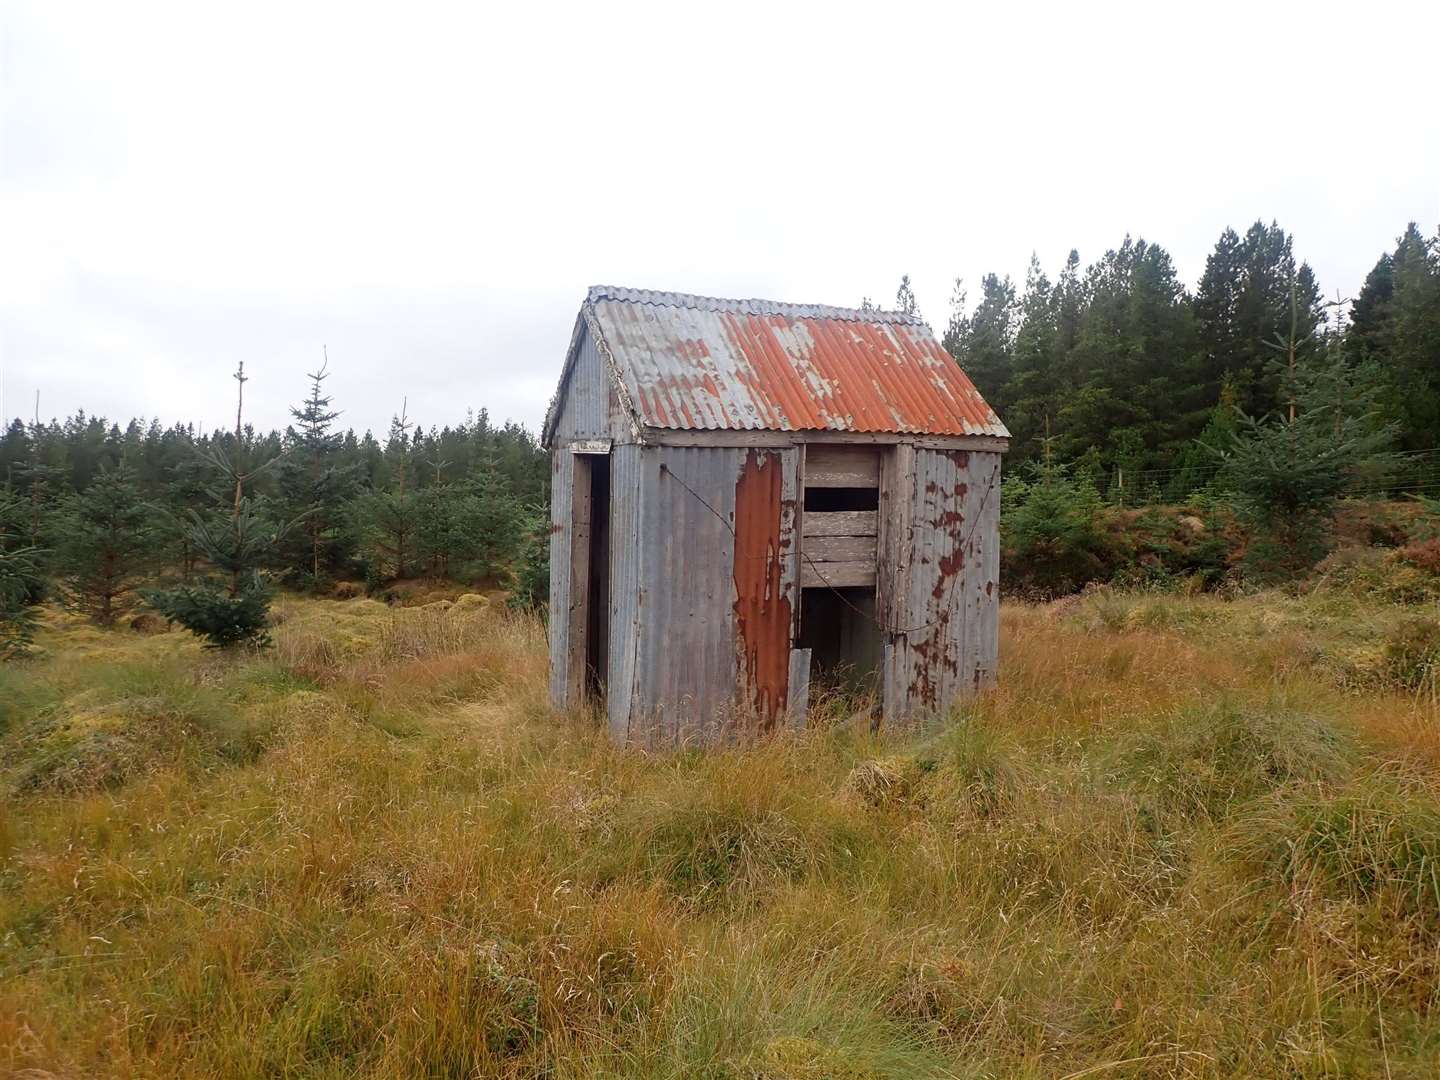 The Loch Gaineimh hut.